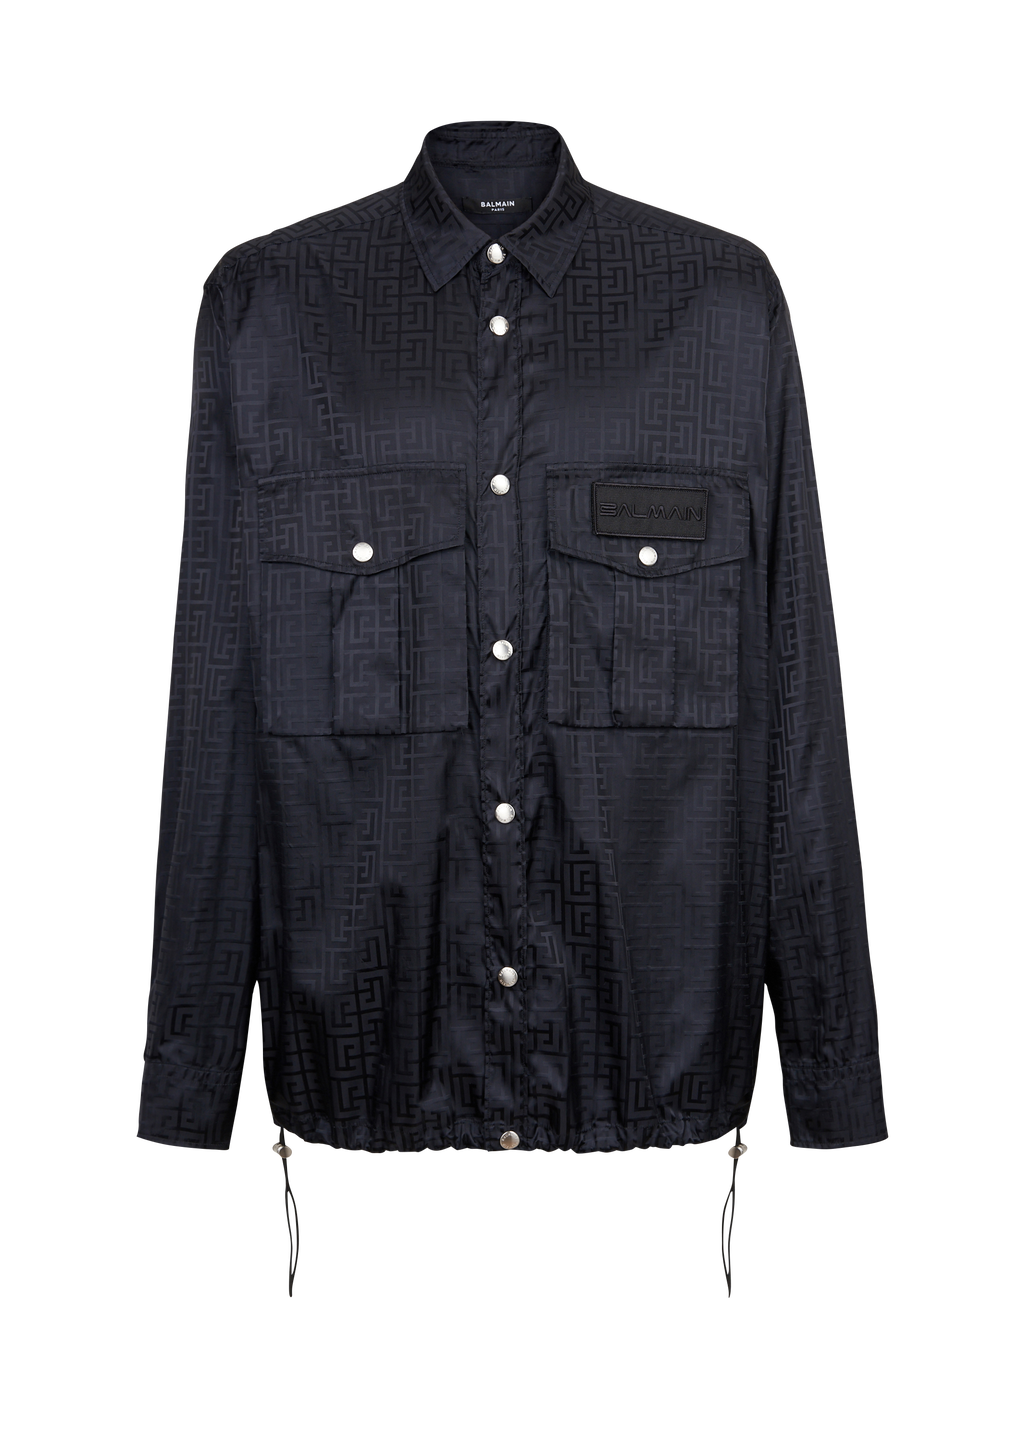 Camicia in nylon con monogramma Balmain, nero, hi-res